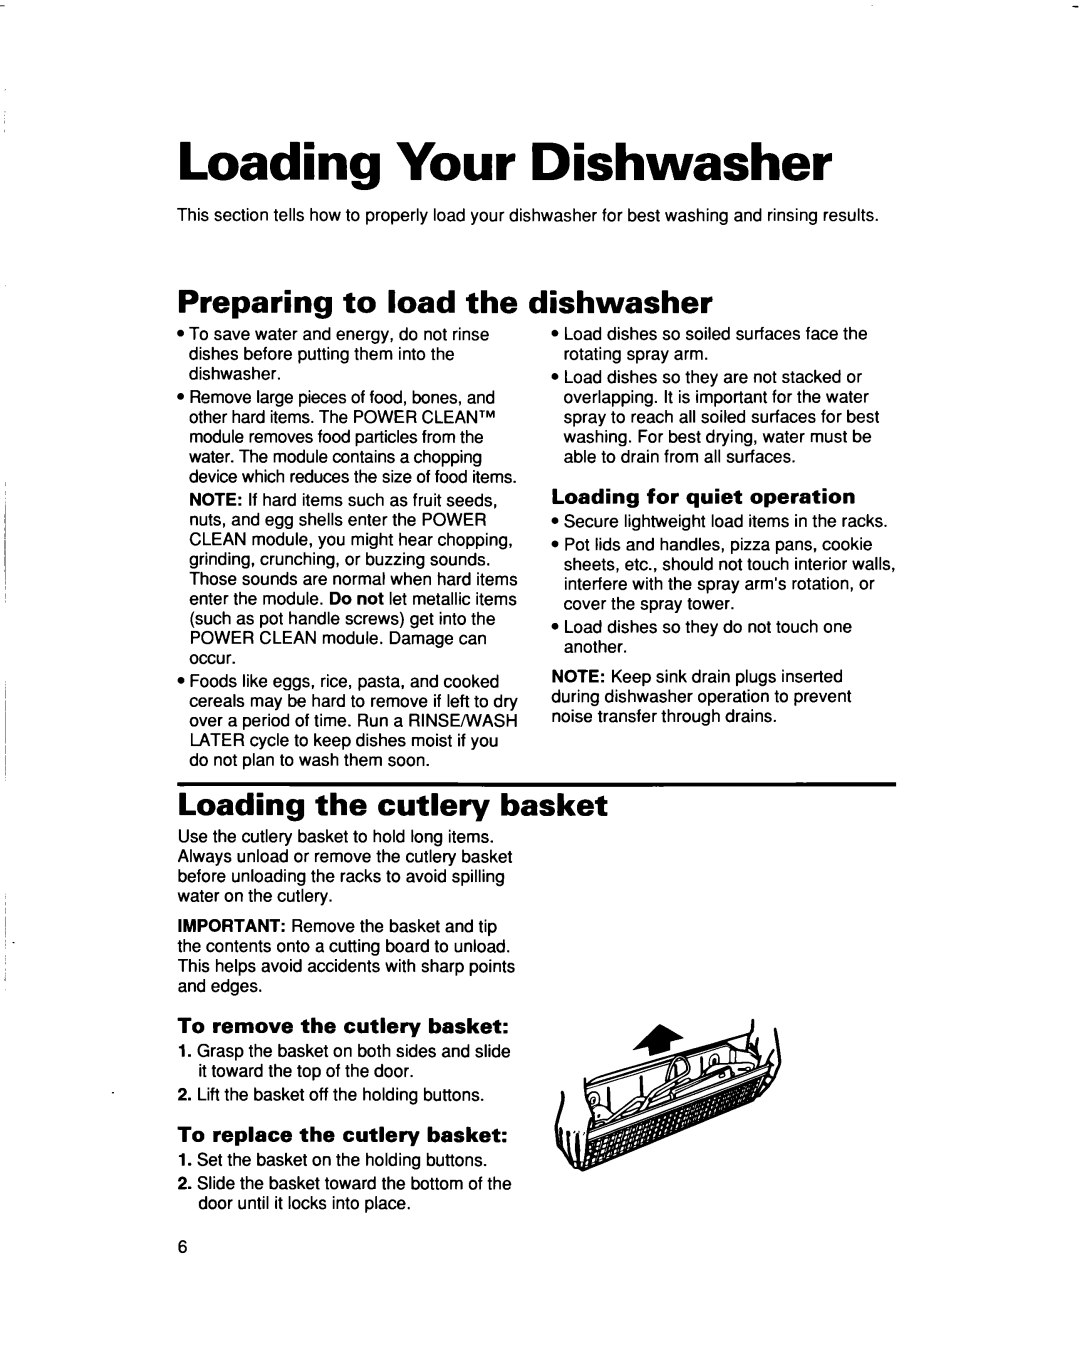 Whirlpool 960 Series warranty Loading Your Dishwasher, Preparing to load the, dishwasher, Loading the cutlery basket 